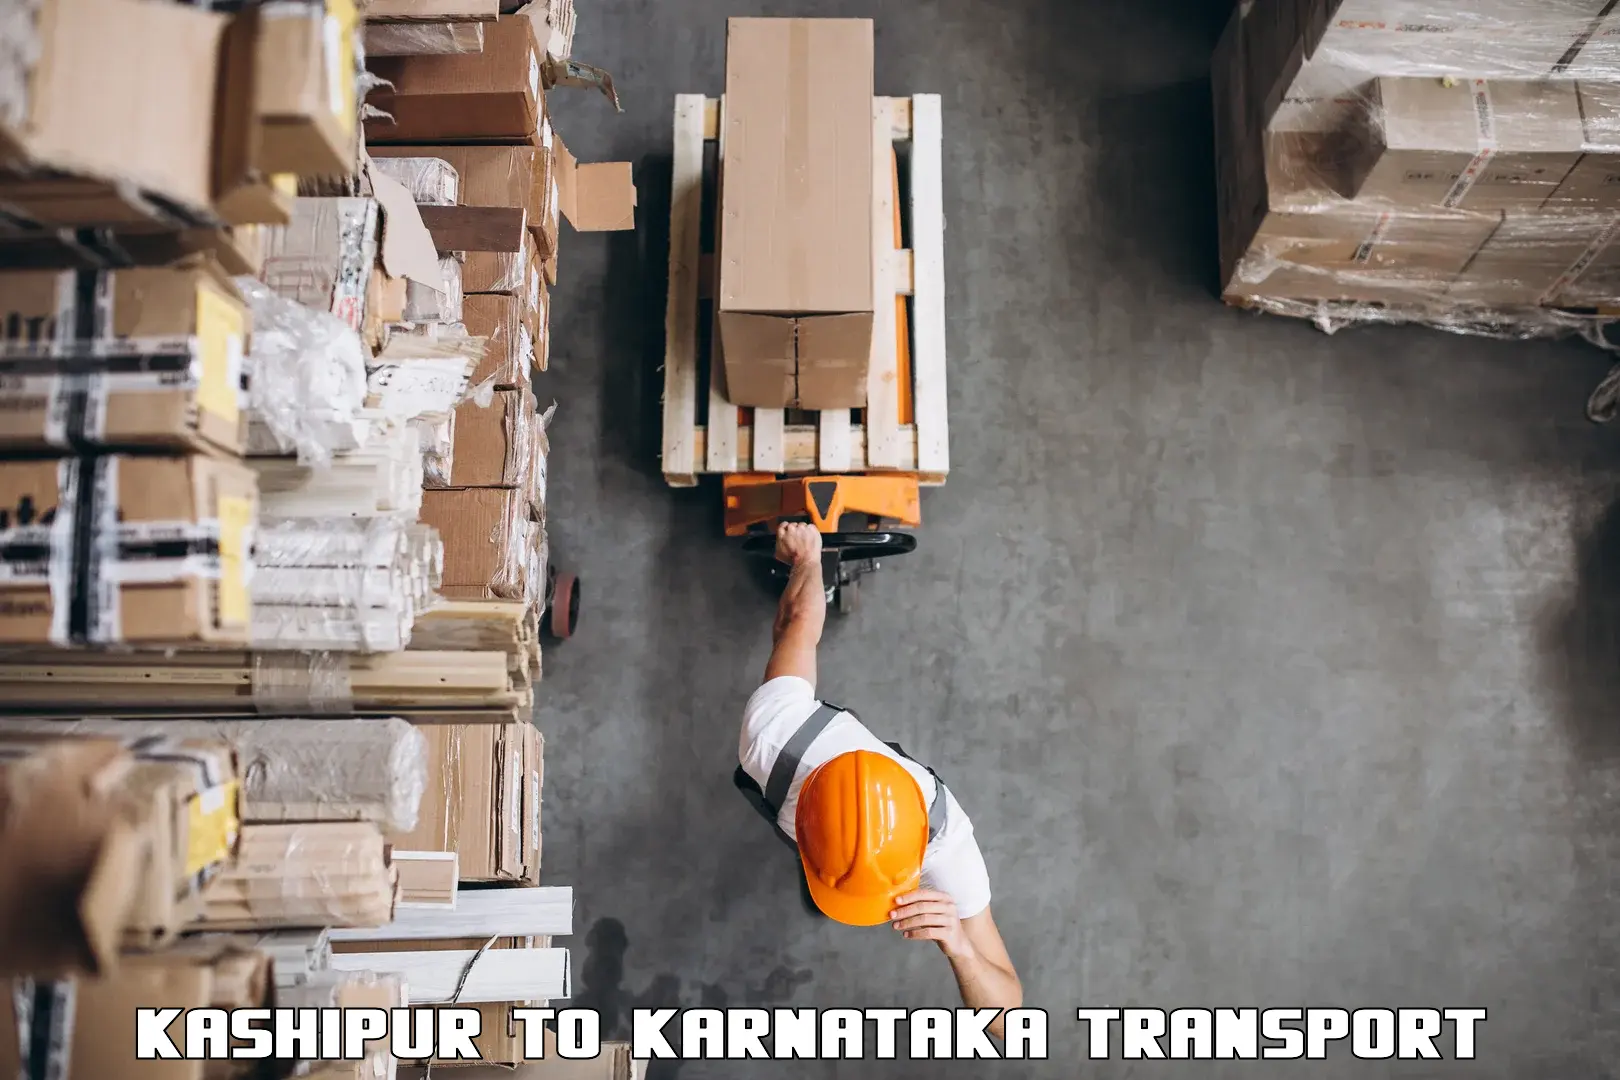 Interstate transport services Kashipur to Karnataka